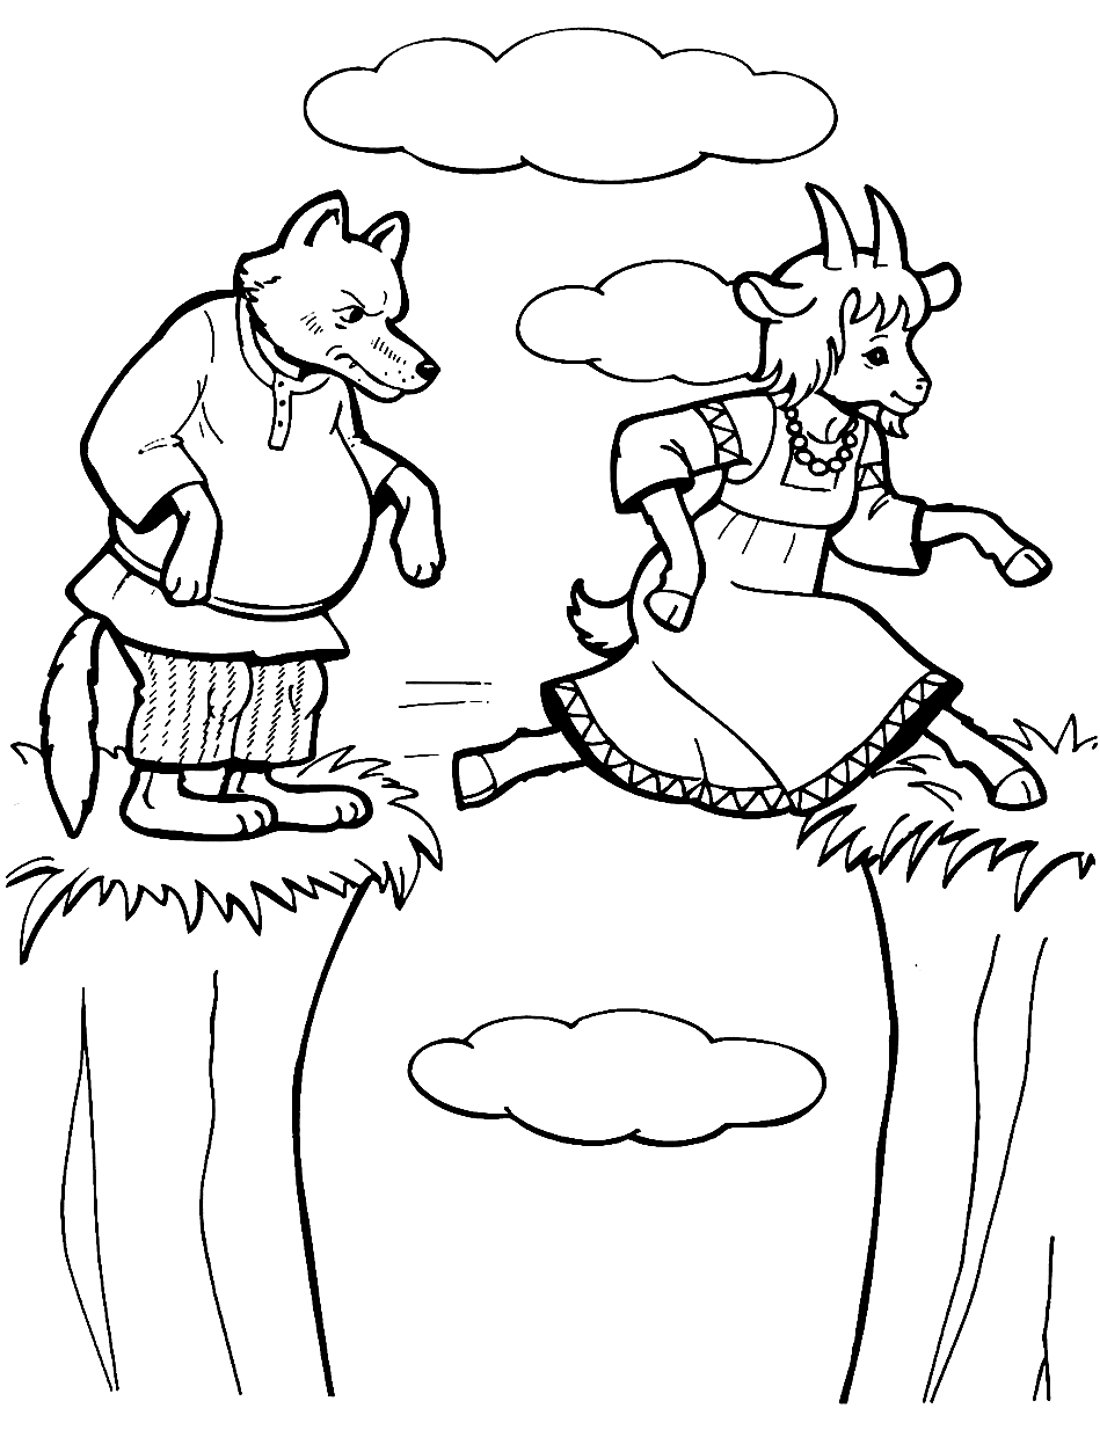 Раскраски Сказка волк и семеро козлят (39 шт.) - скачать или распечатать бесплатно #